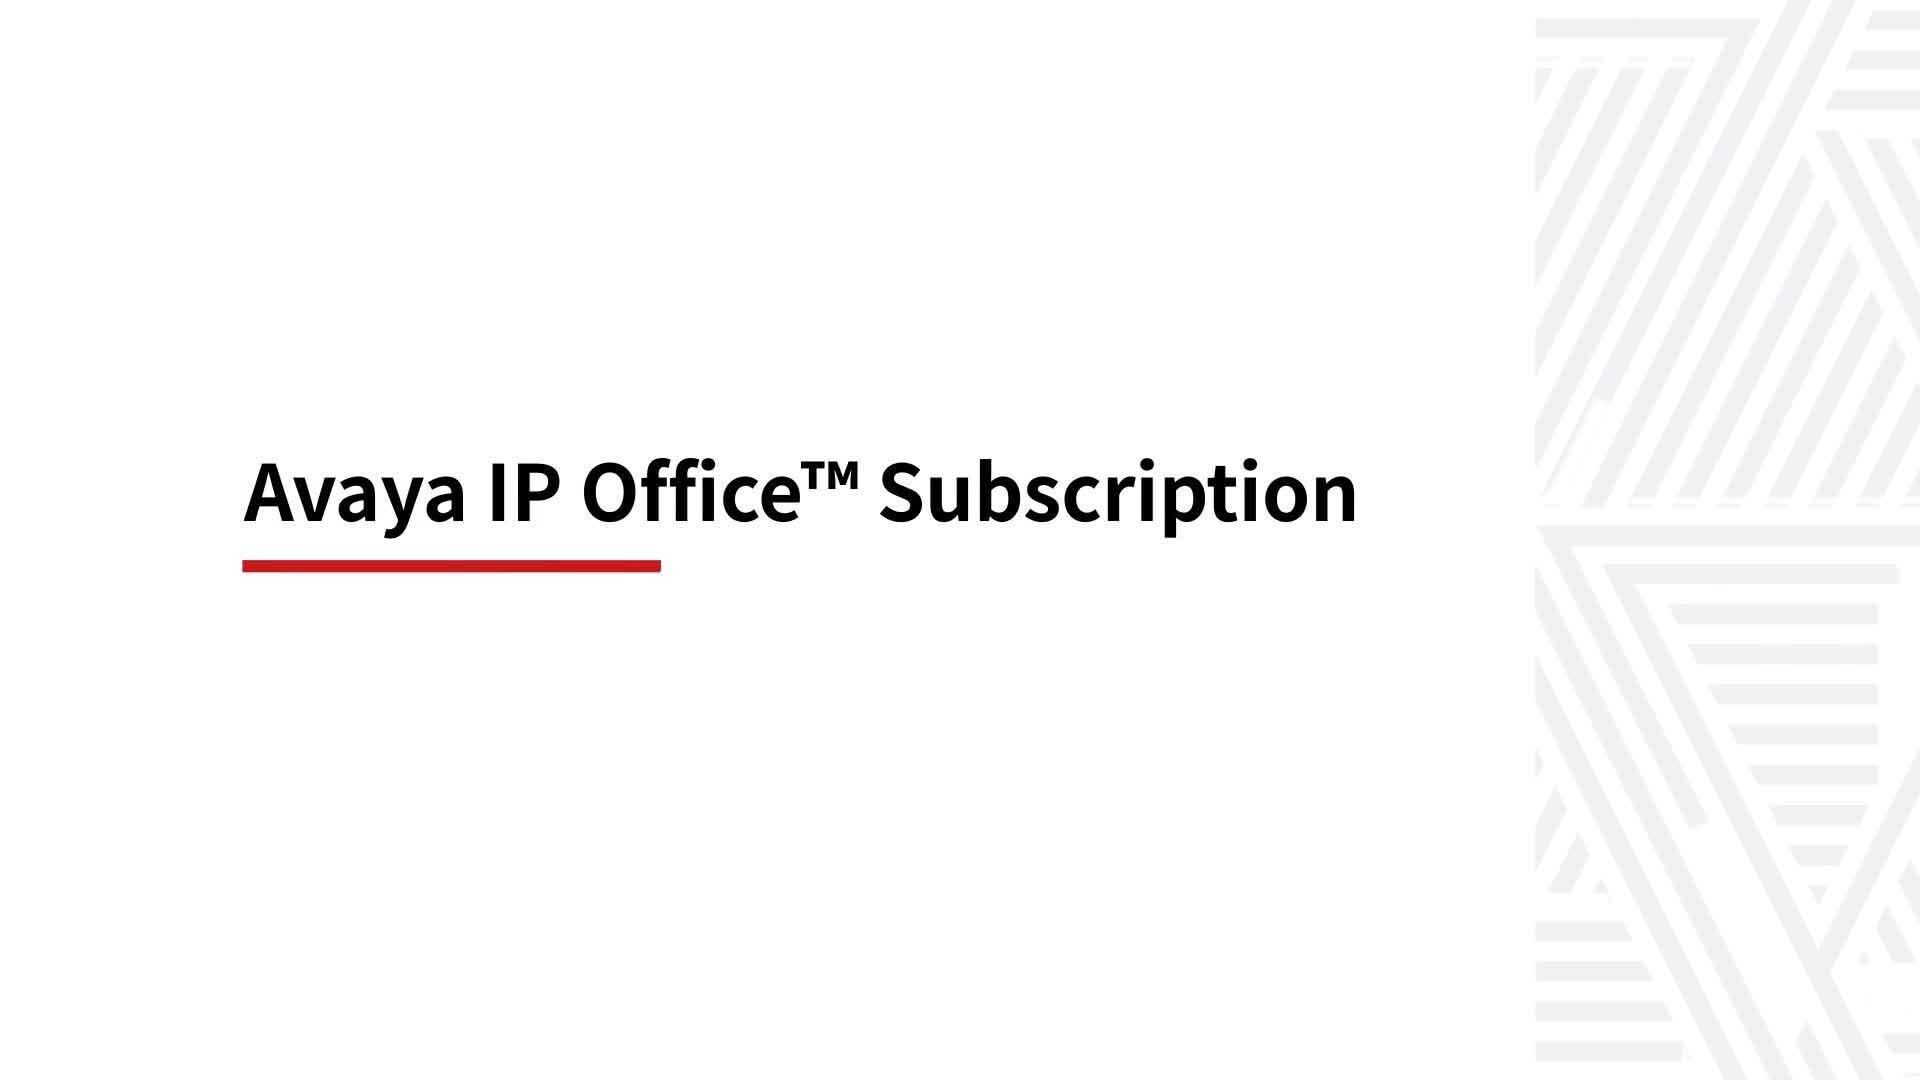 Entdecken Sie Avaya IP Office Subscription in einer Minute! 